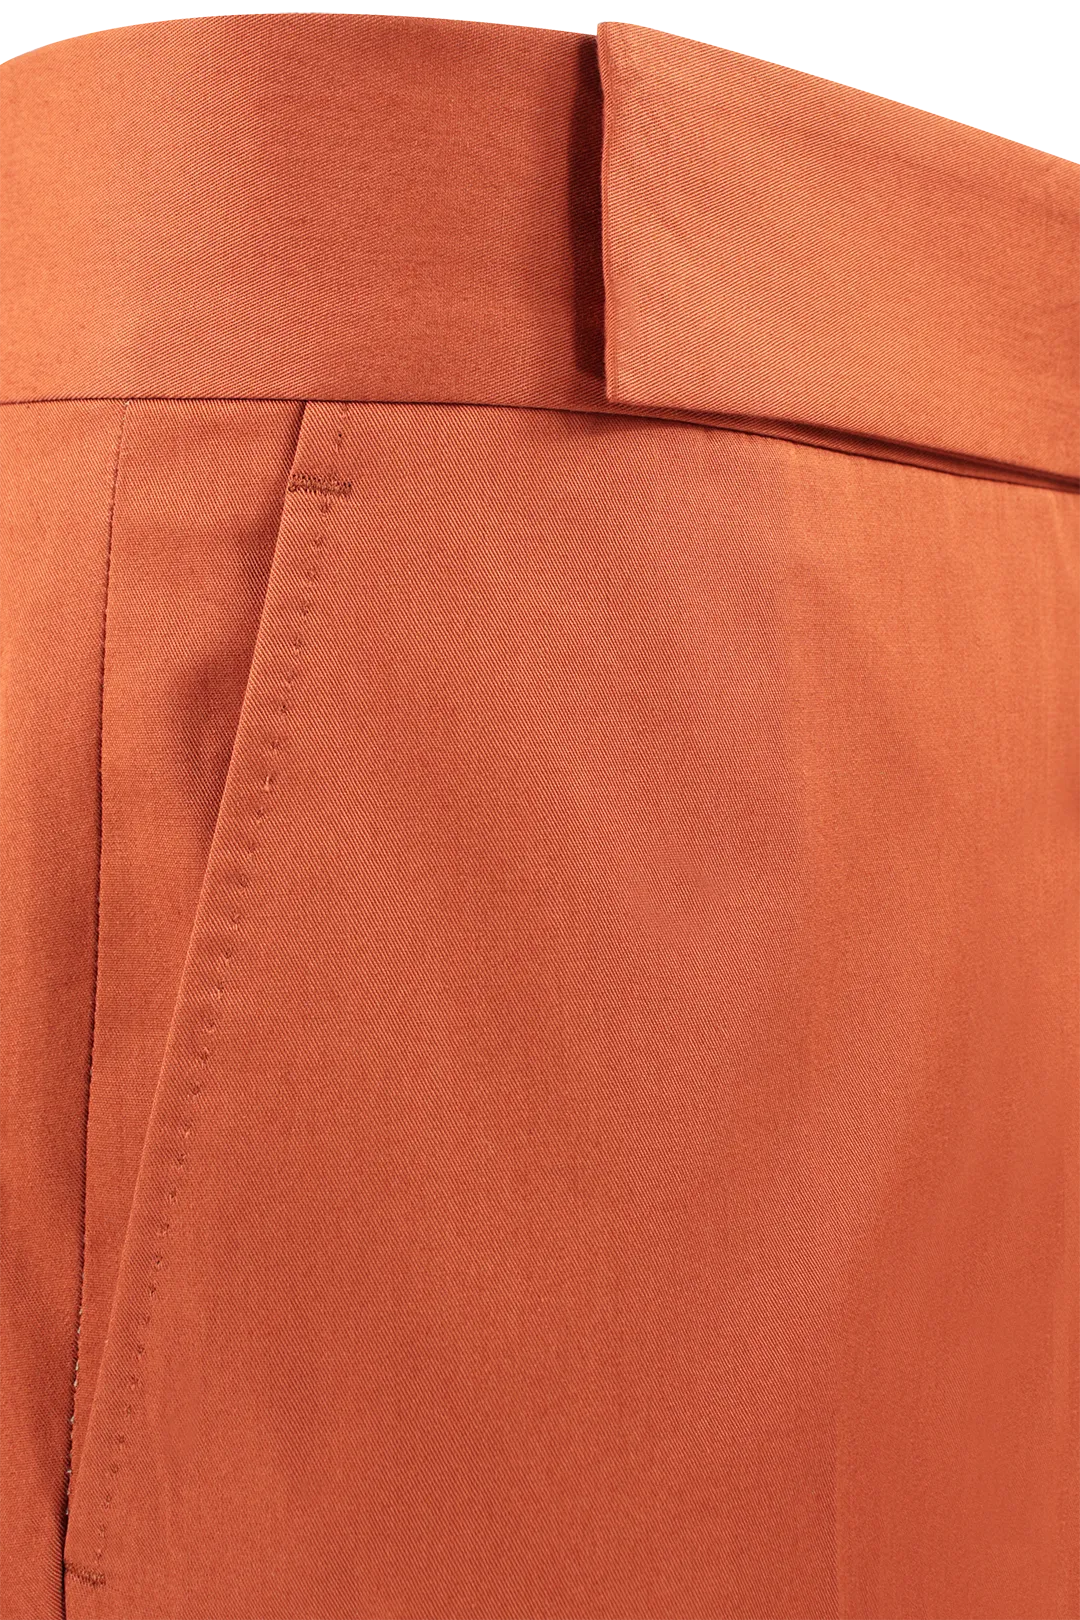 Pantalone con cinta sartoriale in cotone color coccio cinta